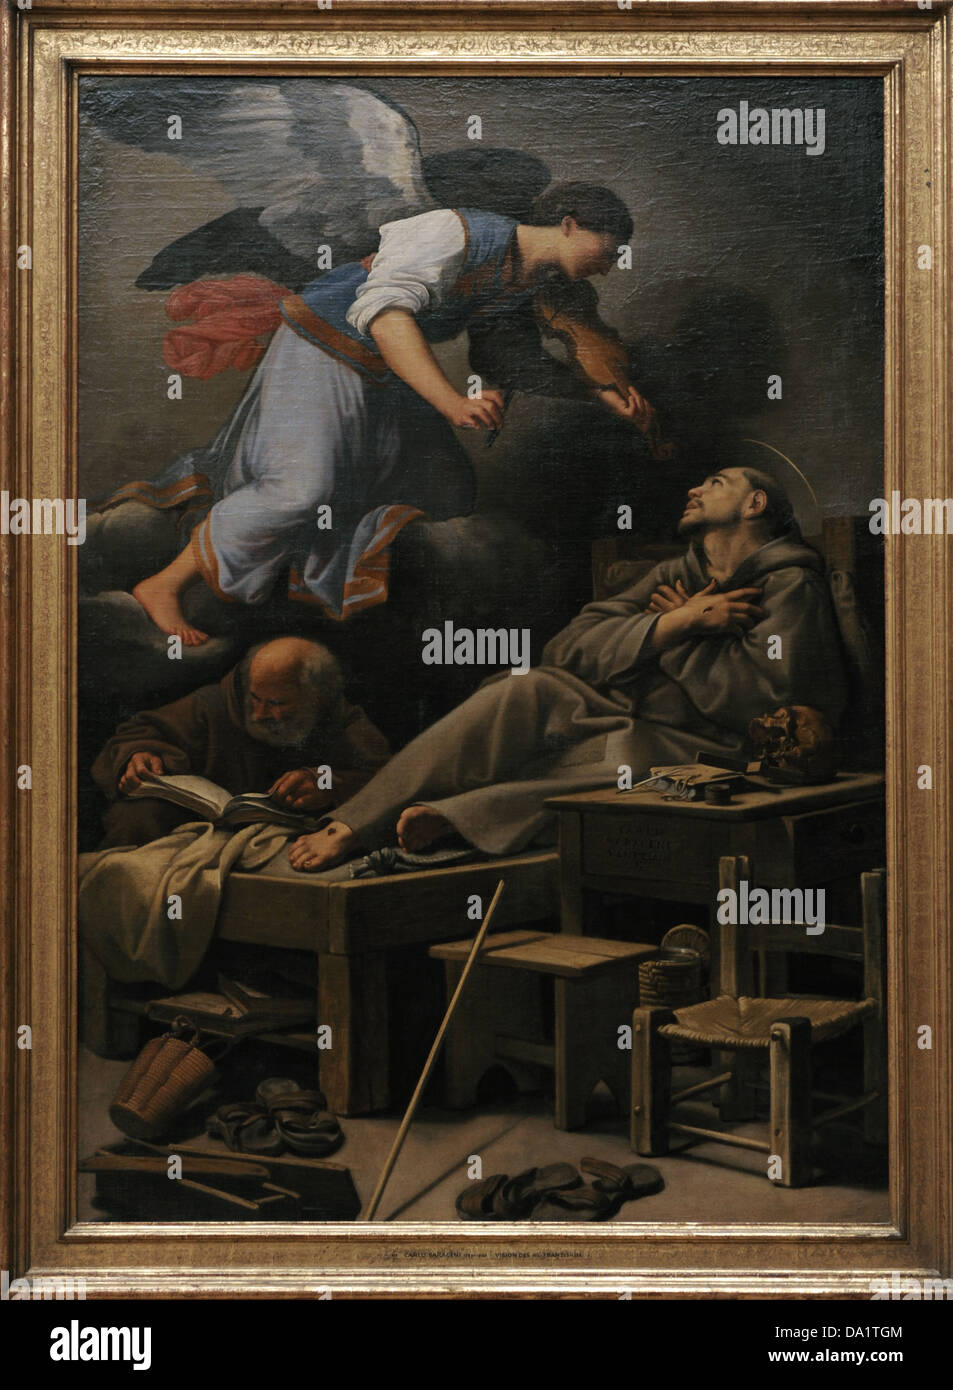 Carlo Saraceni (1580-1620). Italienischer Maler. Die Vision des Heiligen Franziskus, ca. 1620. Alte Pinakothek. München. Deutschland. Stockfoto